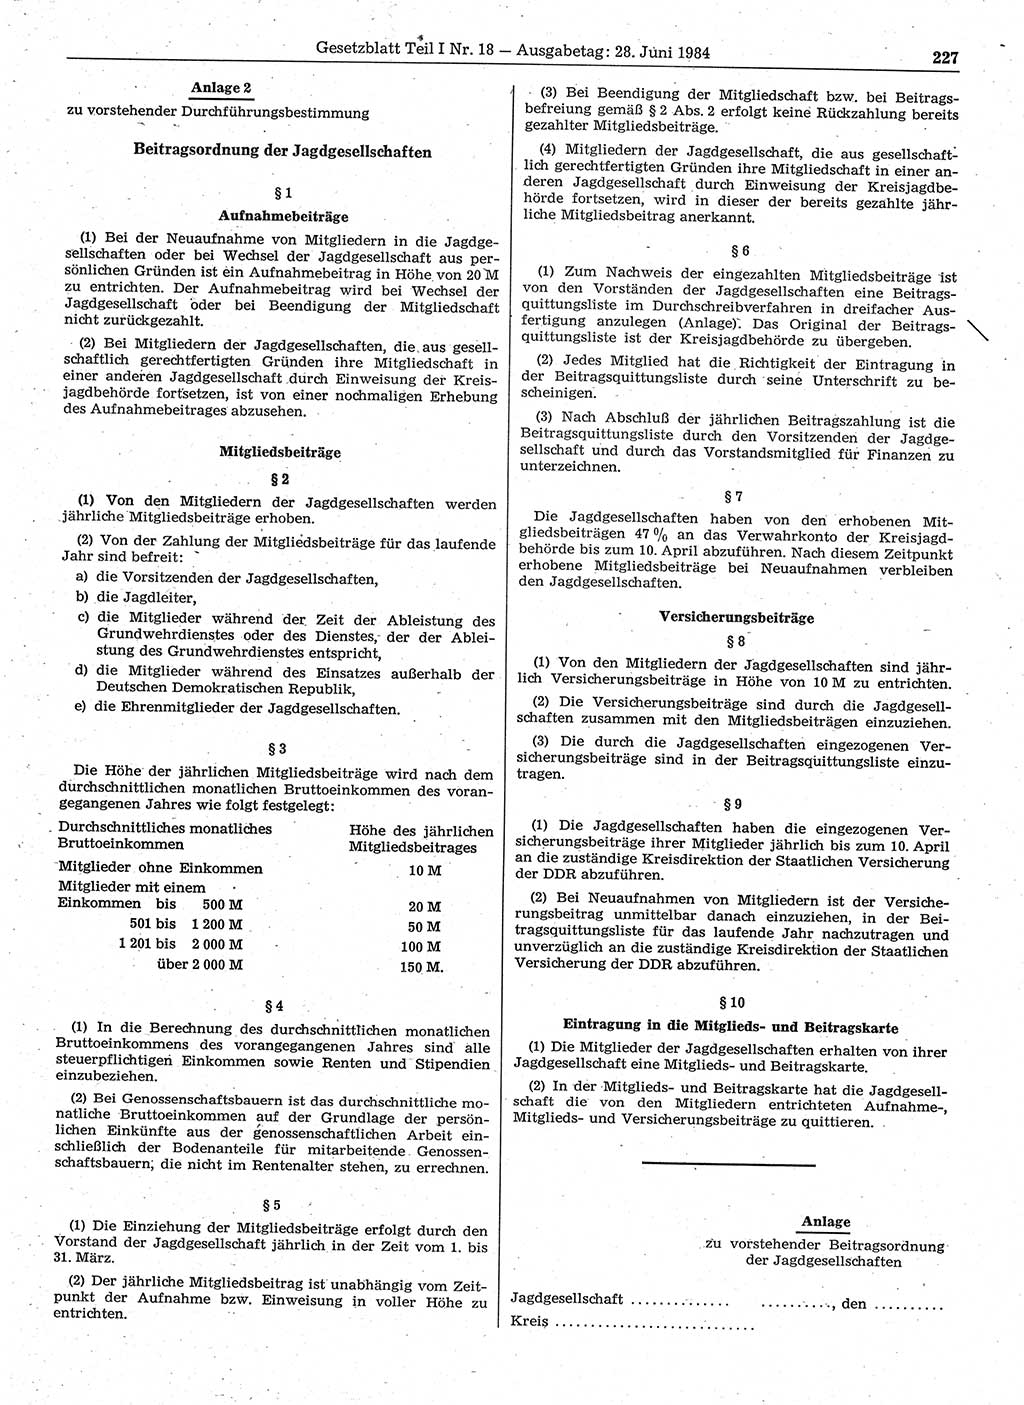 Gesetzblatt (GBl.) der Deutschen Demokratischen Republik (DDR) Teil Ⅰ 1984, Seite 227 (GBl. DDR Ⅰ 1984, S. 227)